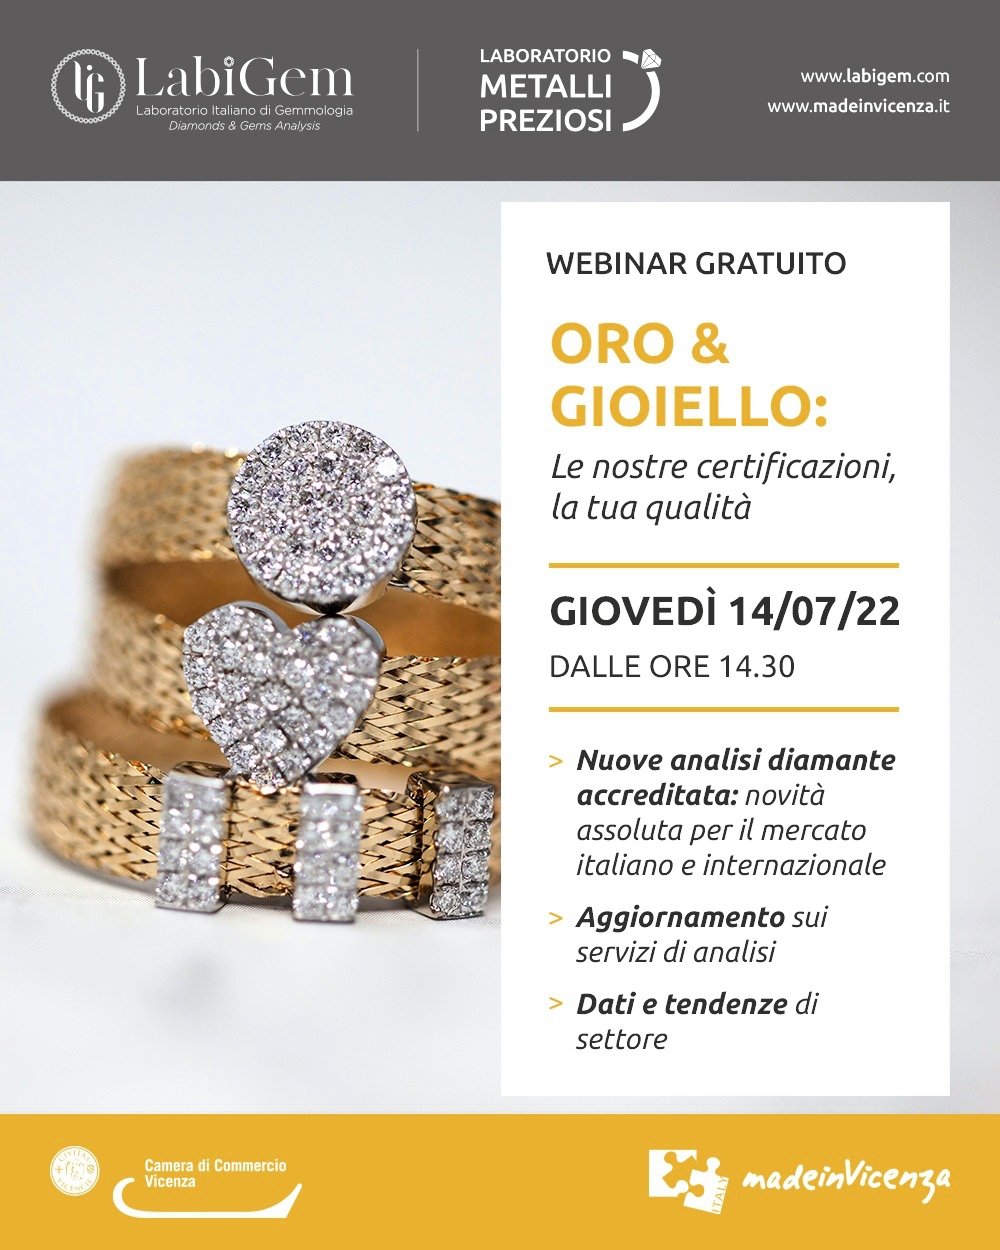 WEBINAR "ORO & GIOIELLO: Certificazioni e qualità" LMP_Evento_V01_1318_1.jpg (Art. corrente, Pag. 1, Foto ridotta)